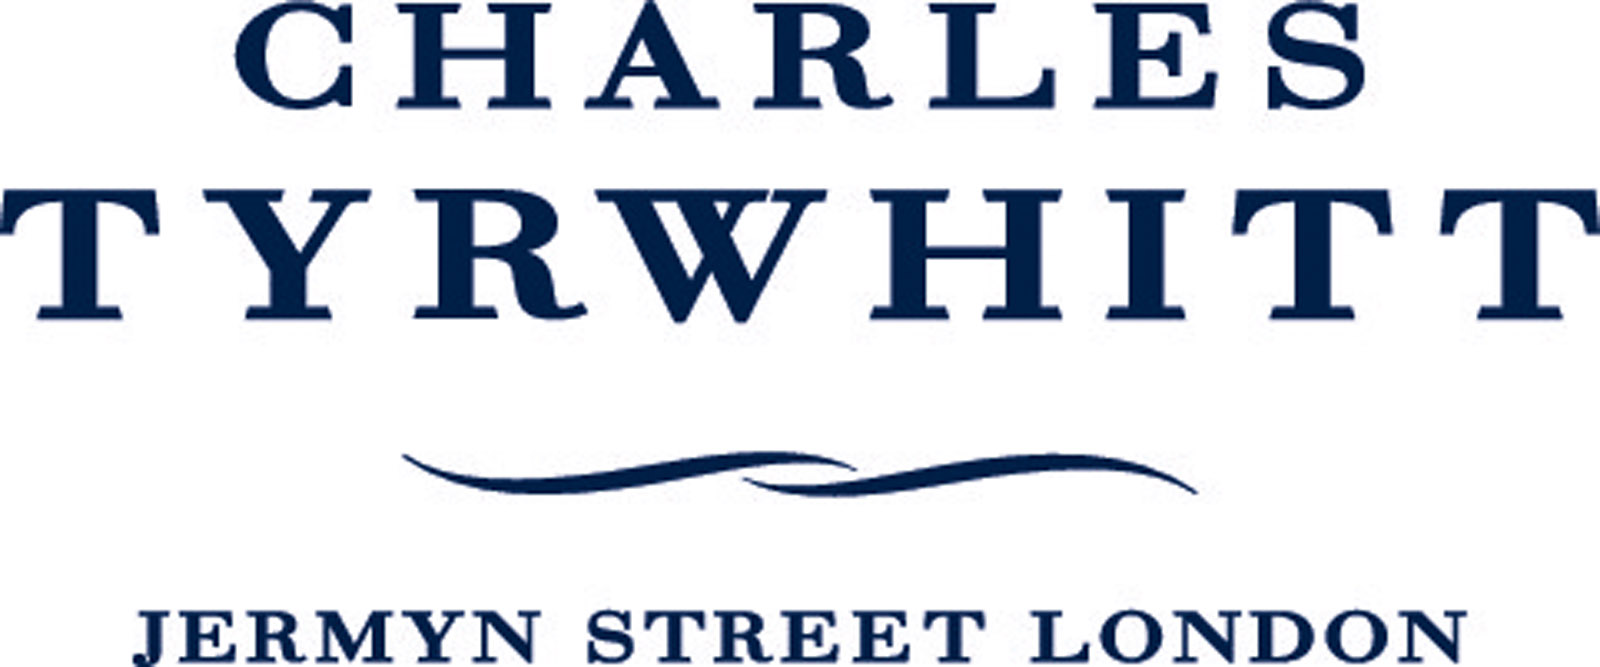 Charles Tyrwhitt - Jermyn Street London (logo)